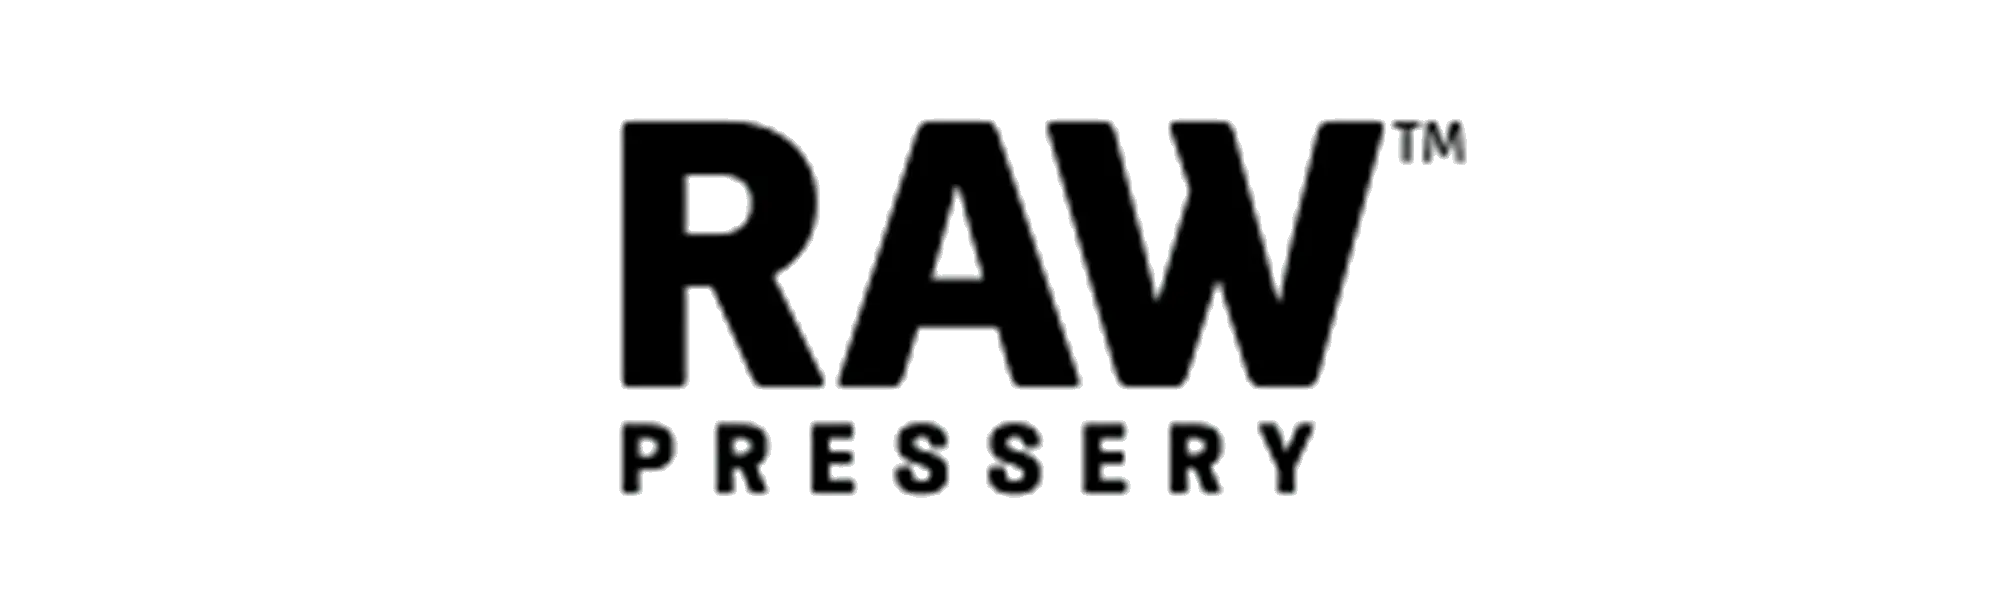 Raw Pressery